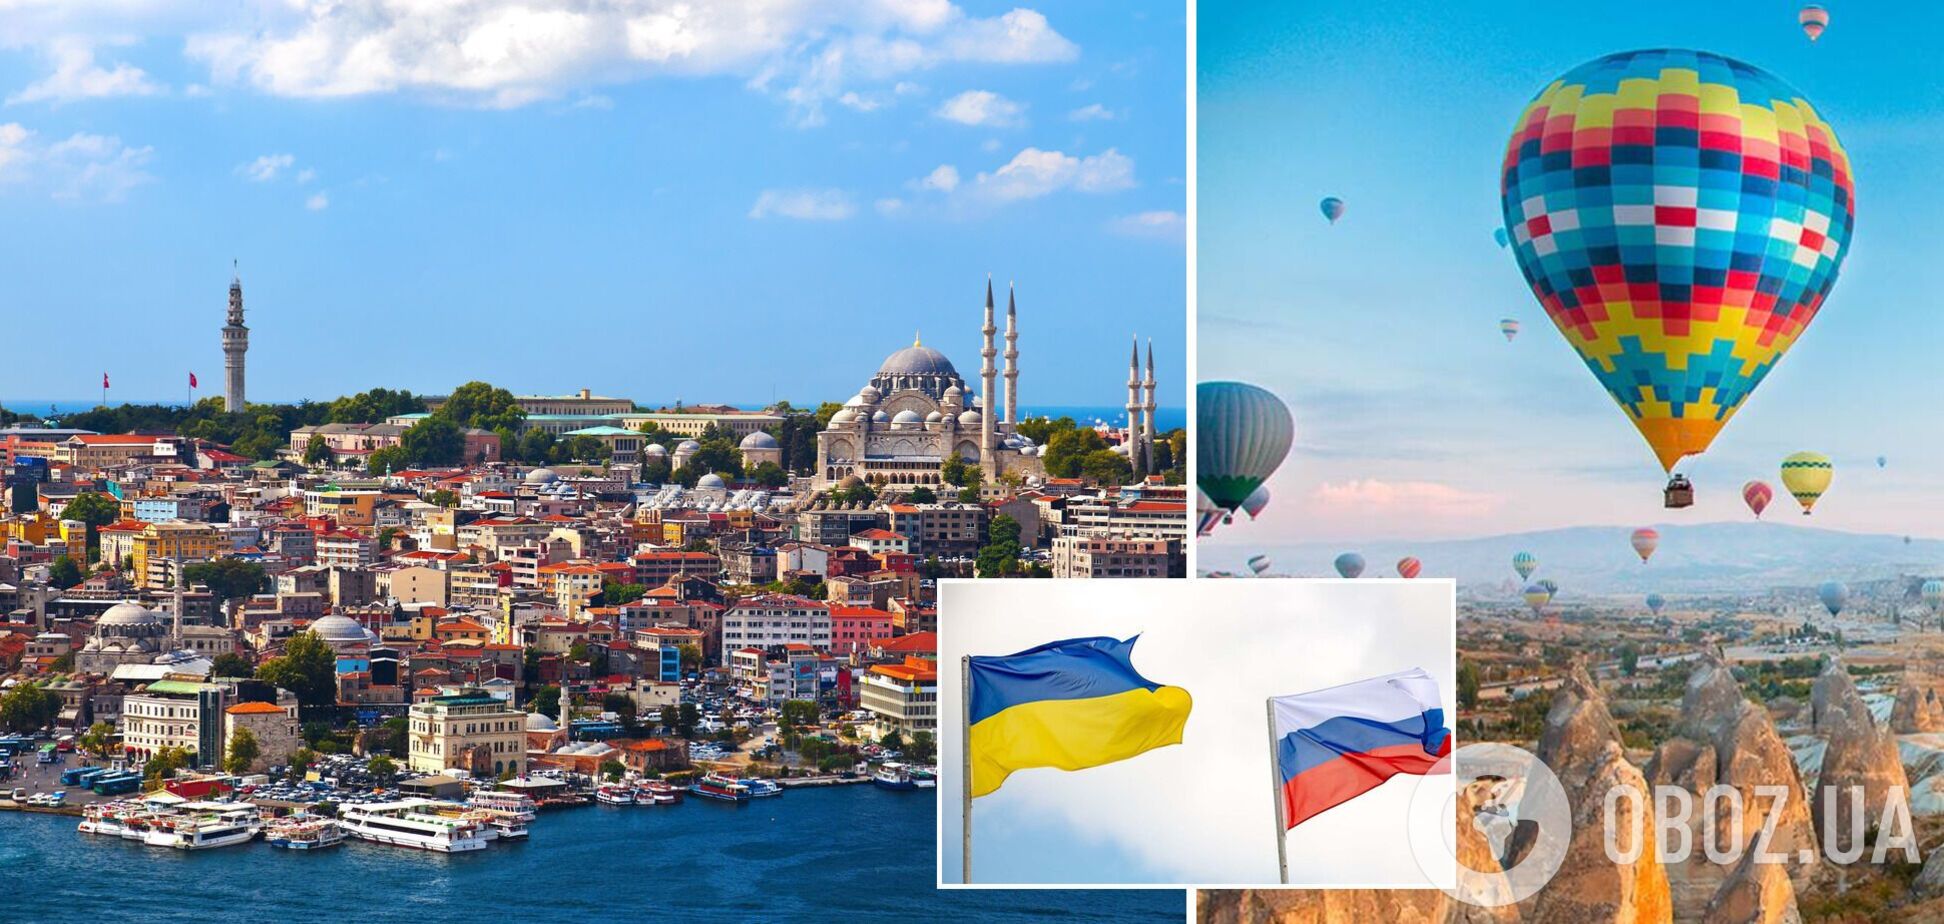 Туристический сезон в Турции оказался под угрозой срыва из-за эскалации конфликта РФ и Украины